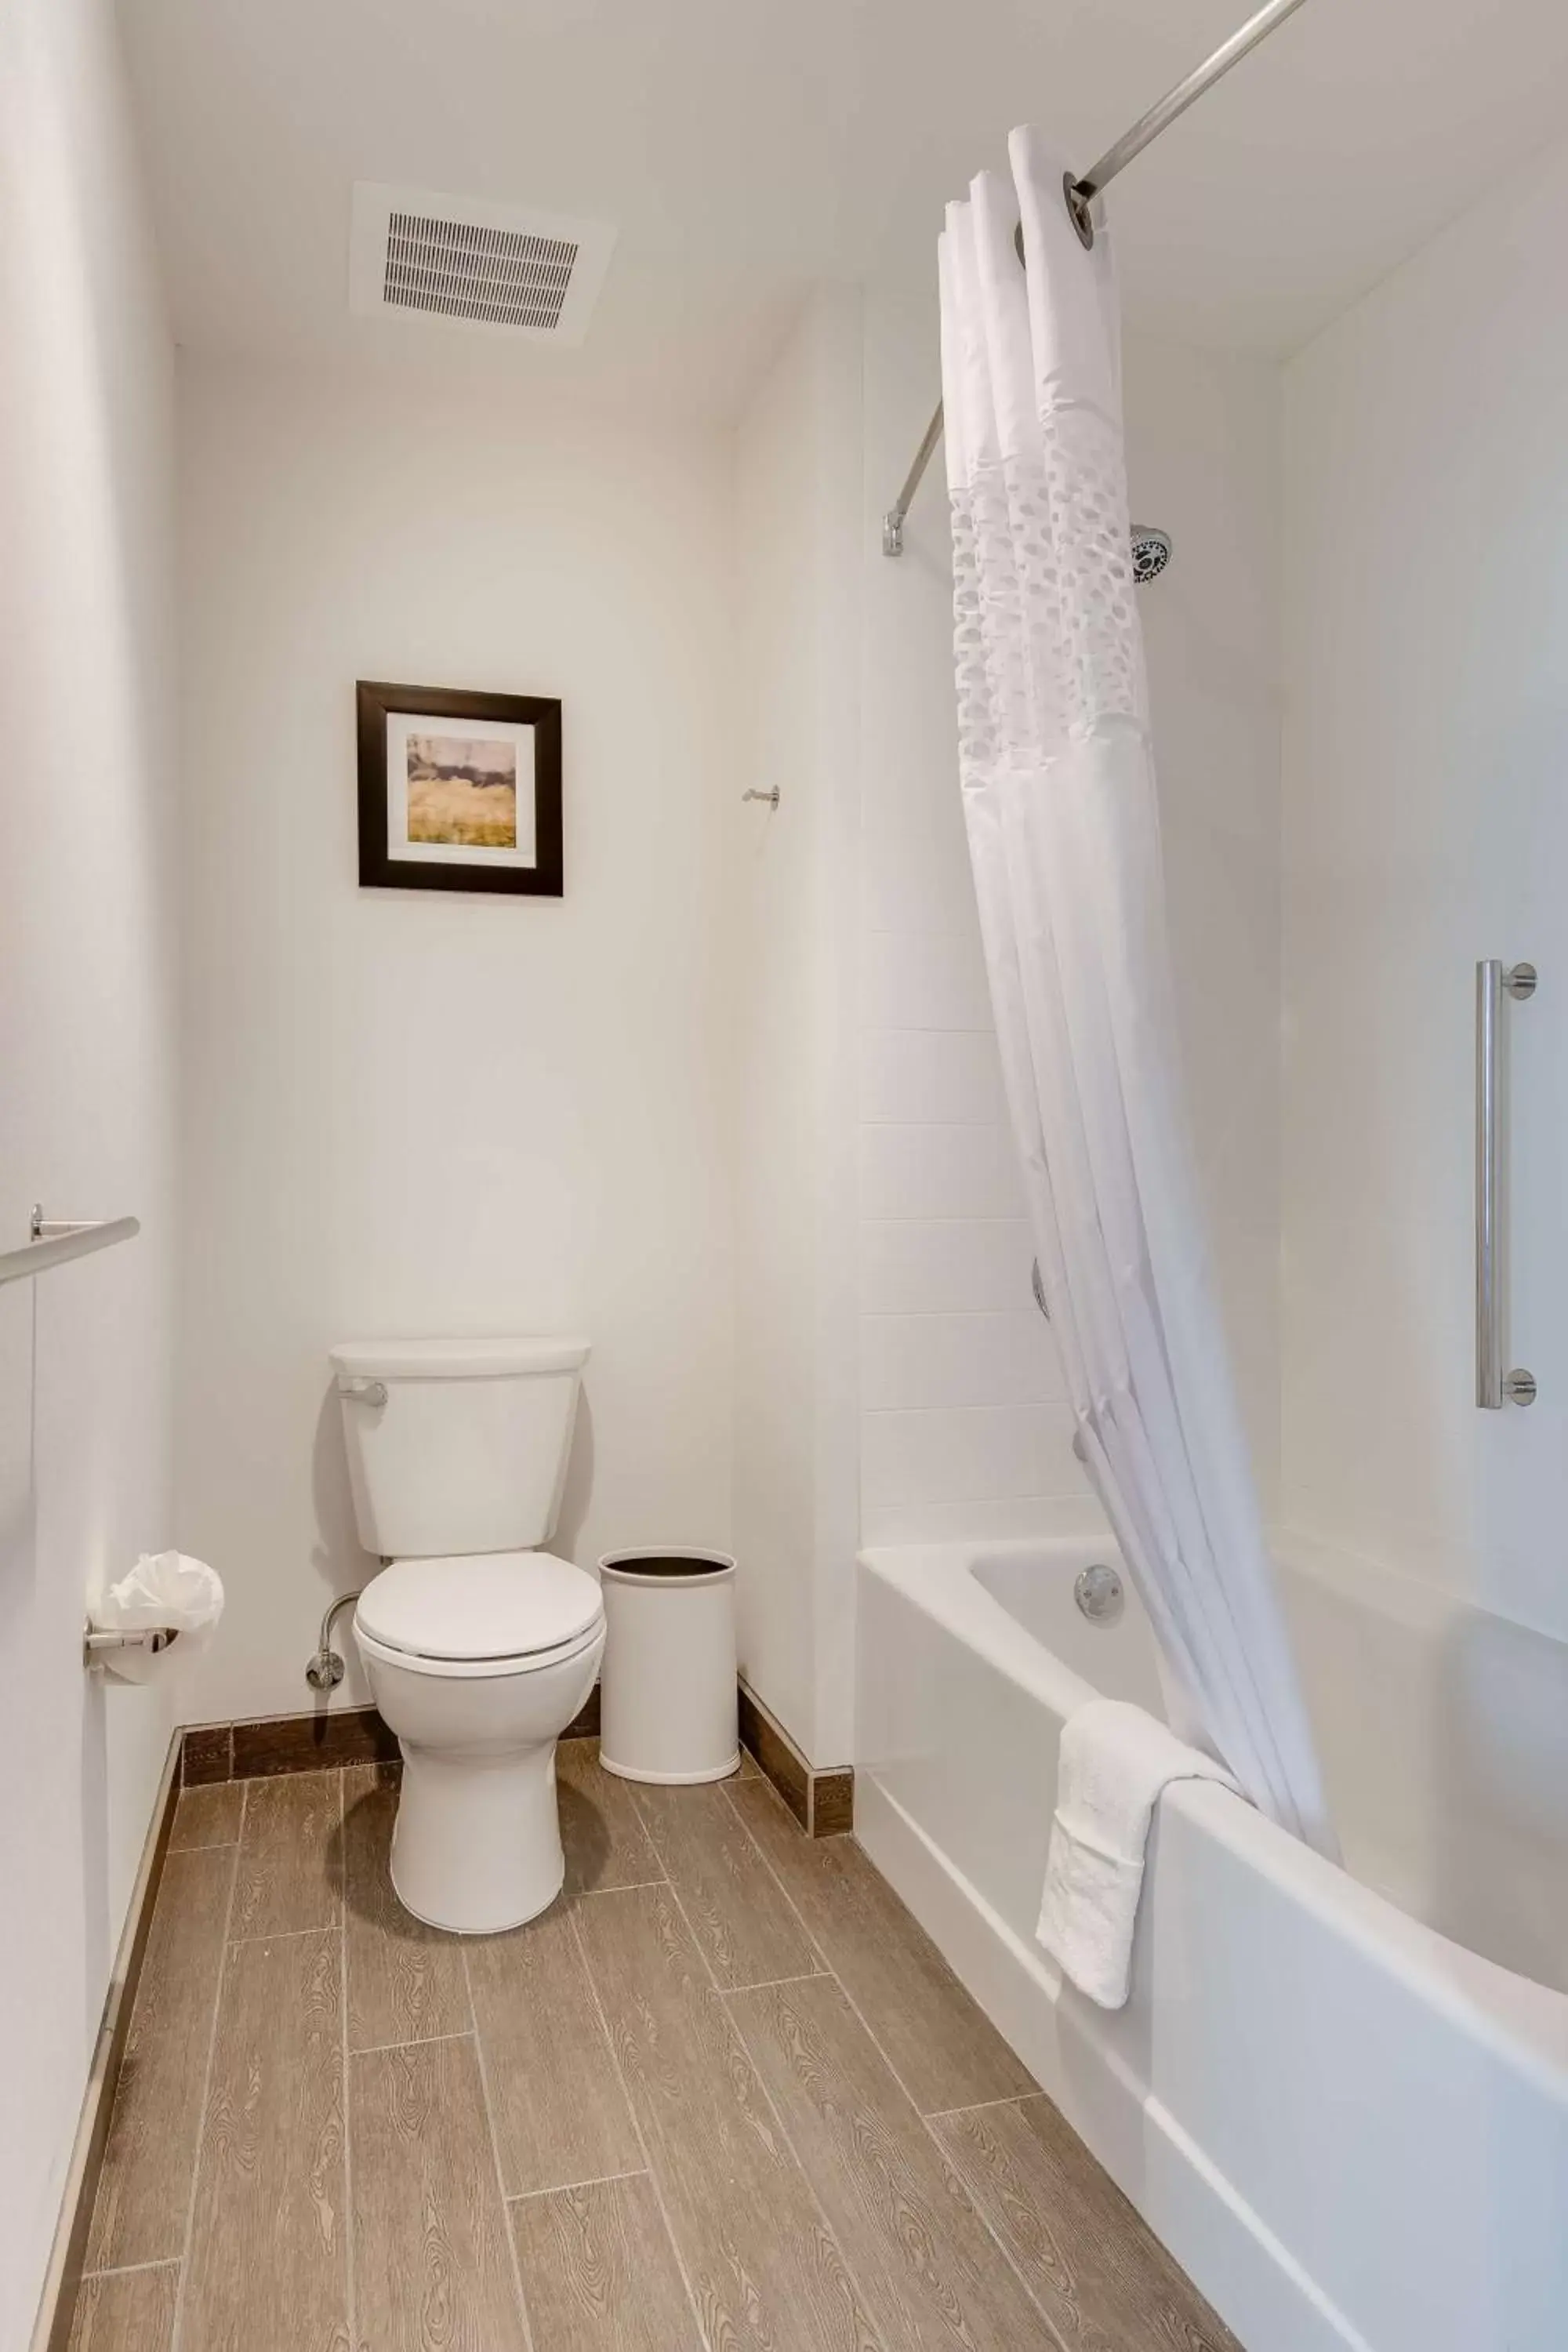 Bathroom in Hampton Inn & Suites Los Angeles - Glendale